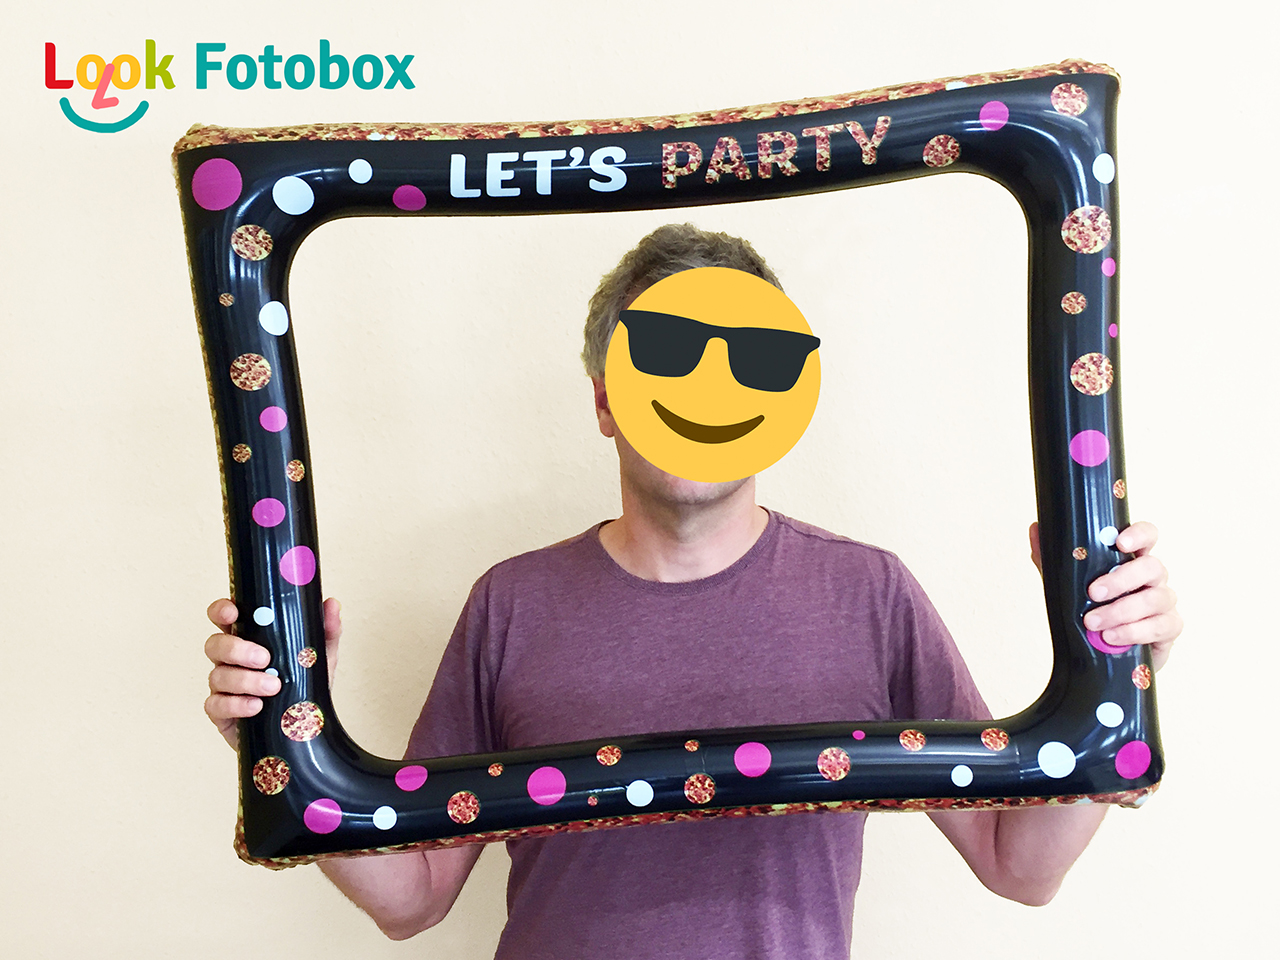 Look-Fotobox - Fotorequisiten, aufblasbarer Bilderrahmen, Let's Party